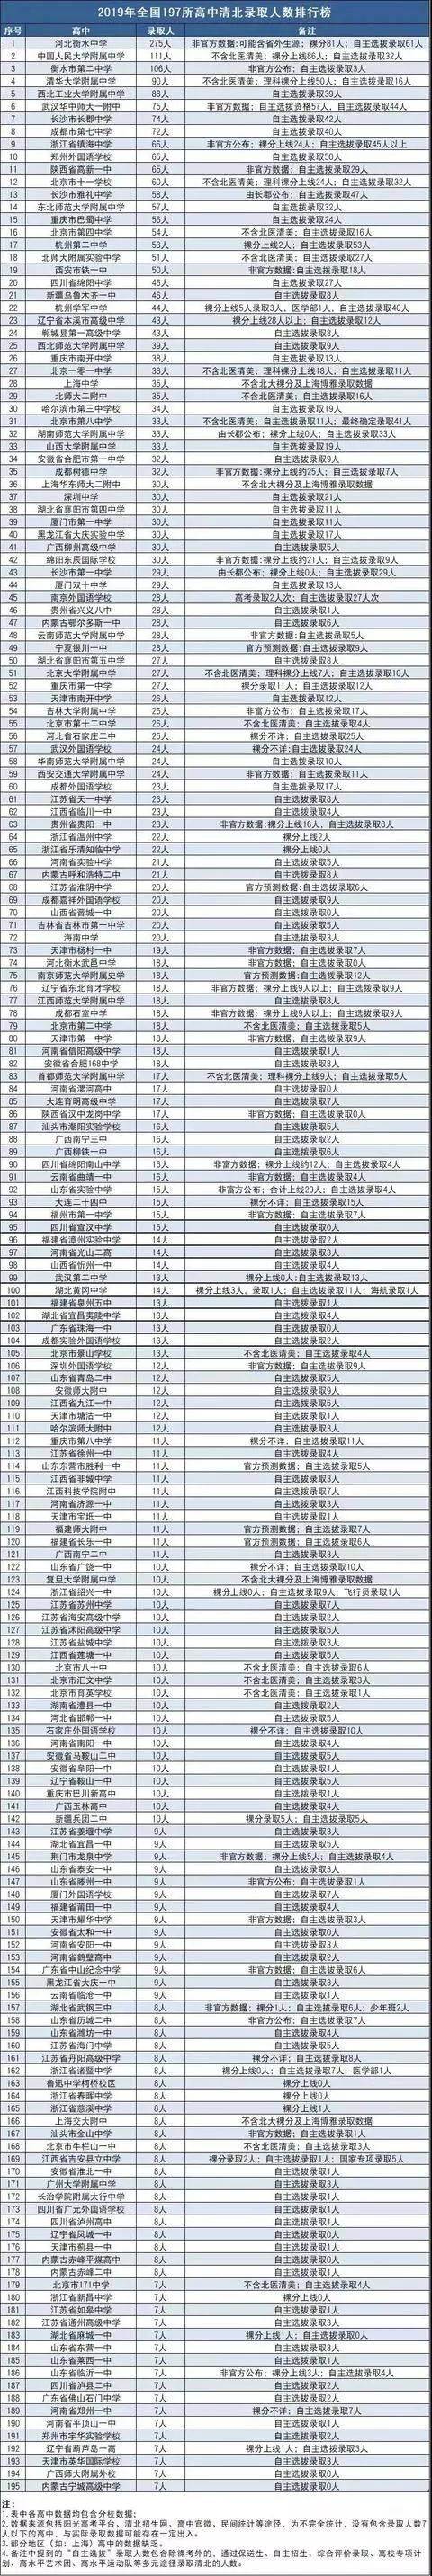 2019年全国197所高中清北录取人数排行榜